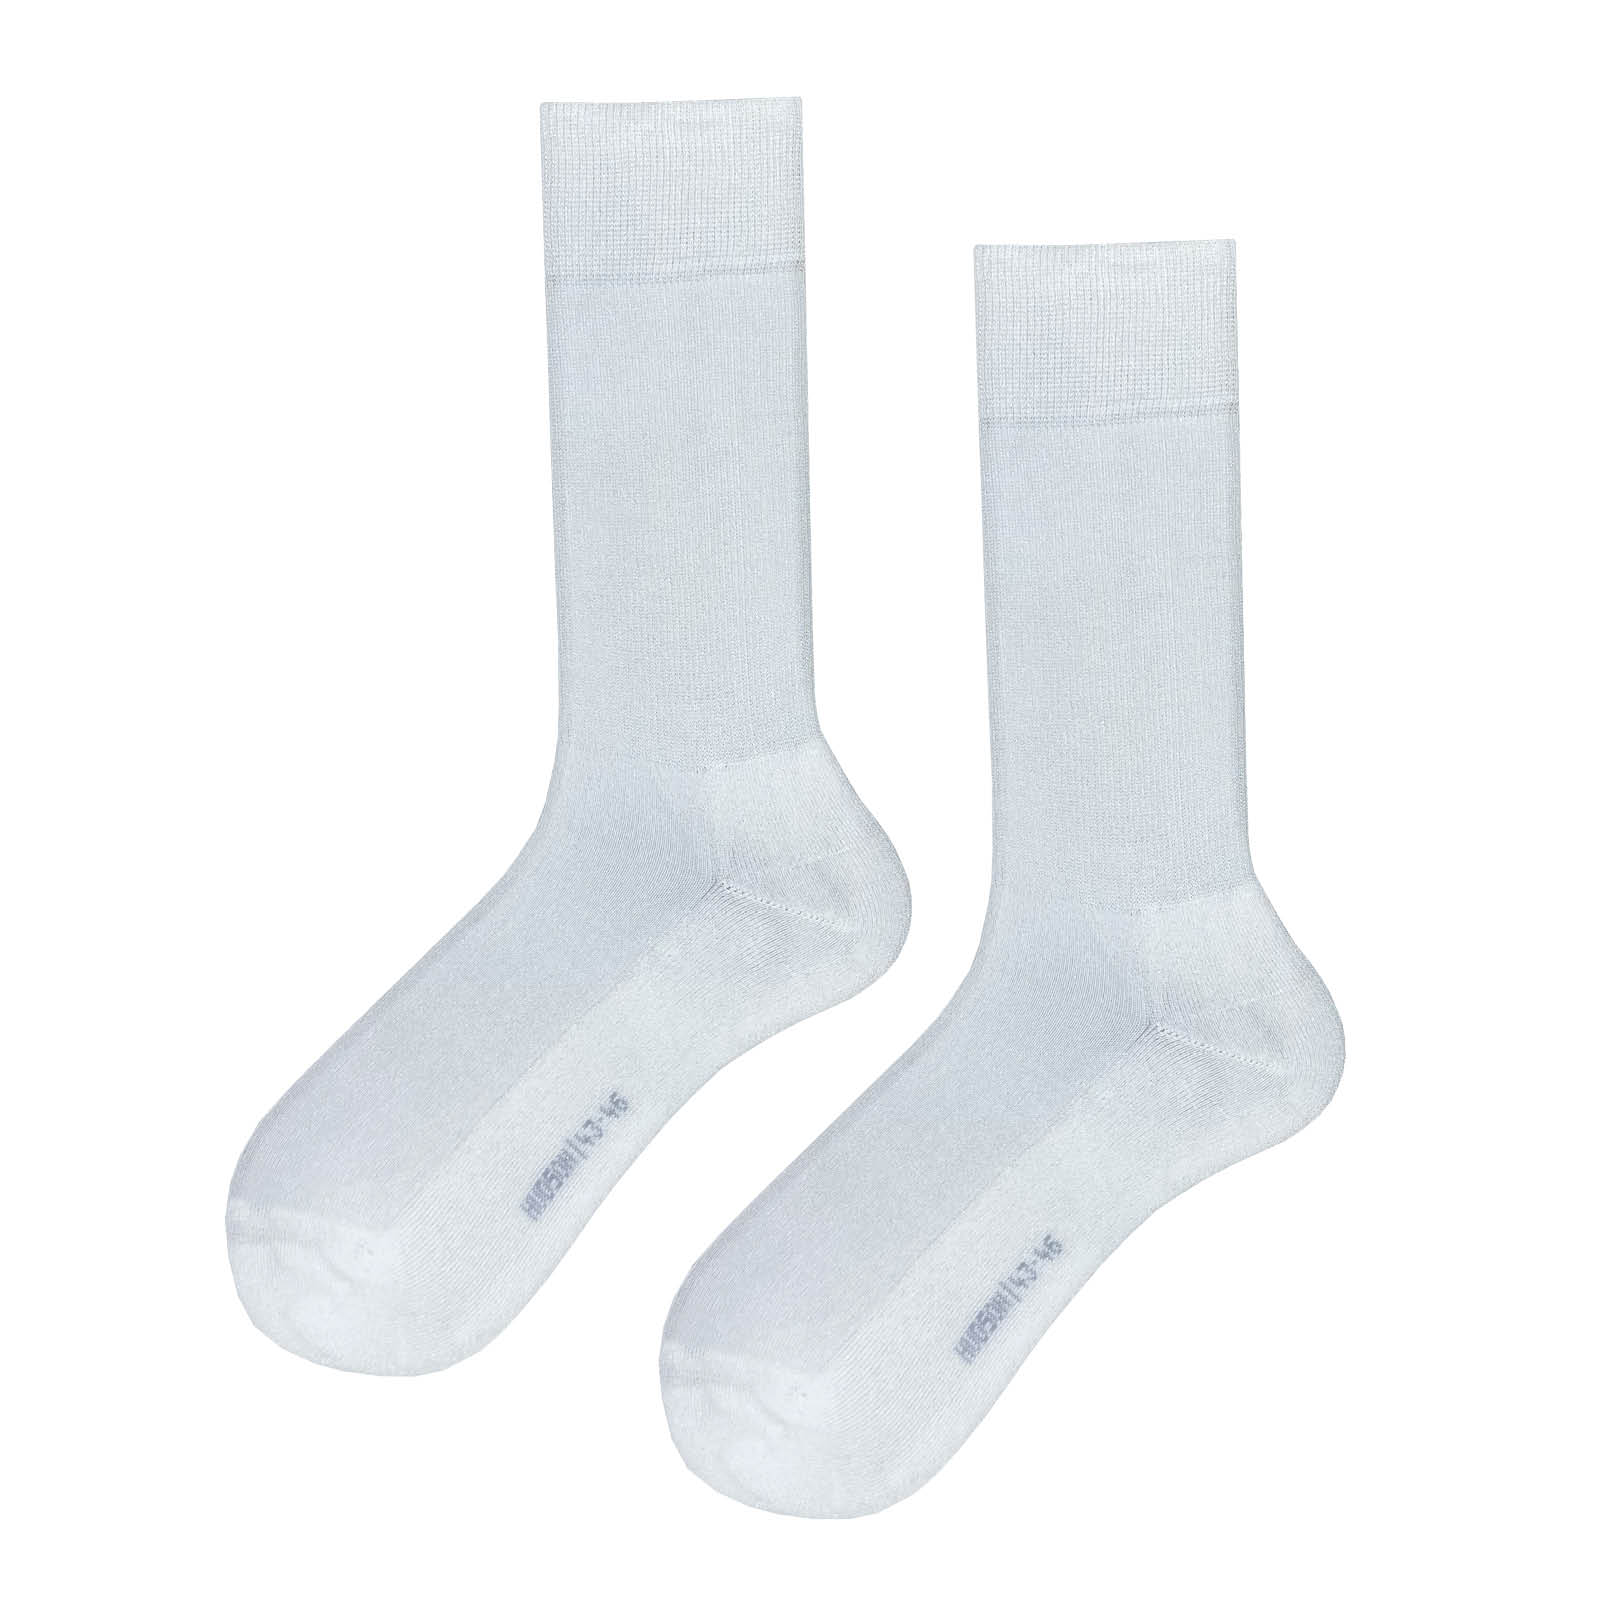 HUDSON Herren ONE FOR ALL -  39/42 - Strapazierfähige Herren Socken mit langer Lebensdauer für alle Trageanlässe - White (Weiß)